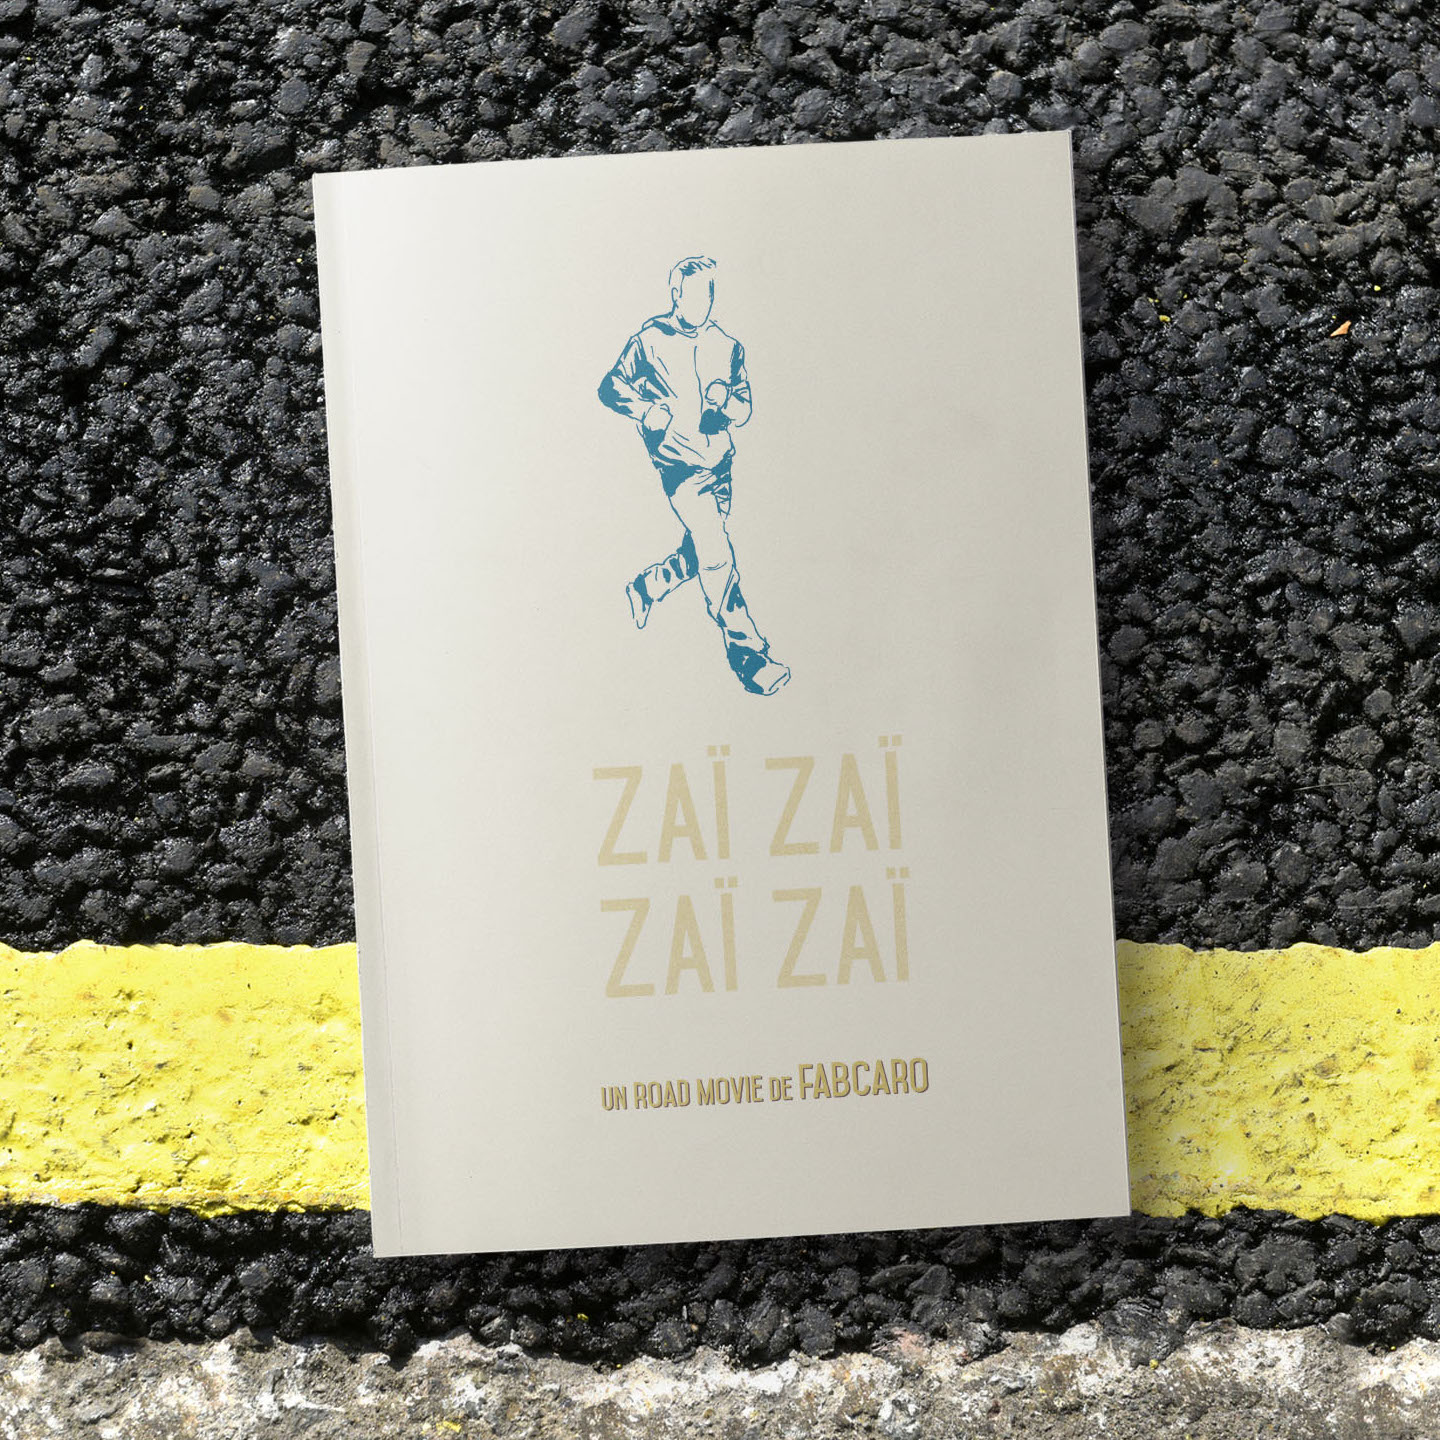 Zaï Zaï Zaï Zaï, a Road Movie by Fabcaro